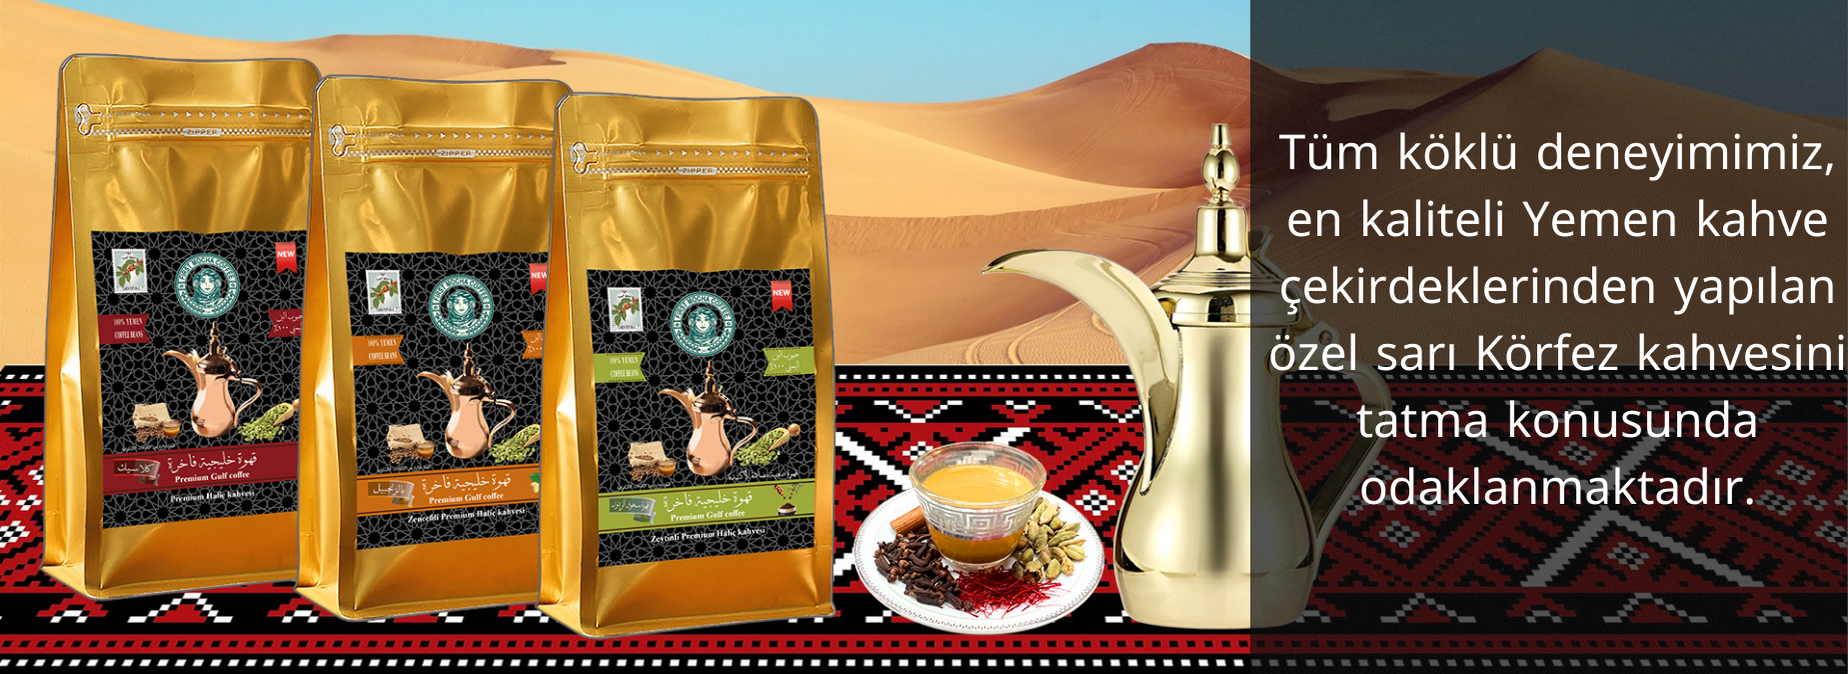 Tüm köklü deneyimimiz, en kaliteli Yemen kahve çekirdeklerinden yapılan özel sarı Körfez kahvesini tatma konusunda odaklanmaktadır. (1)